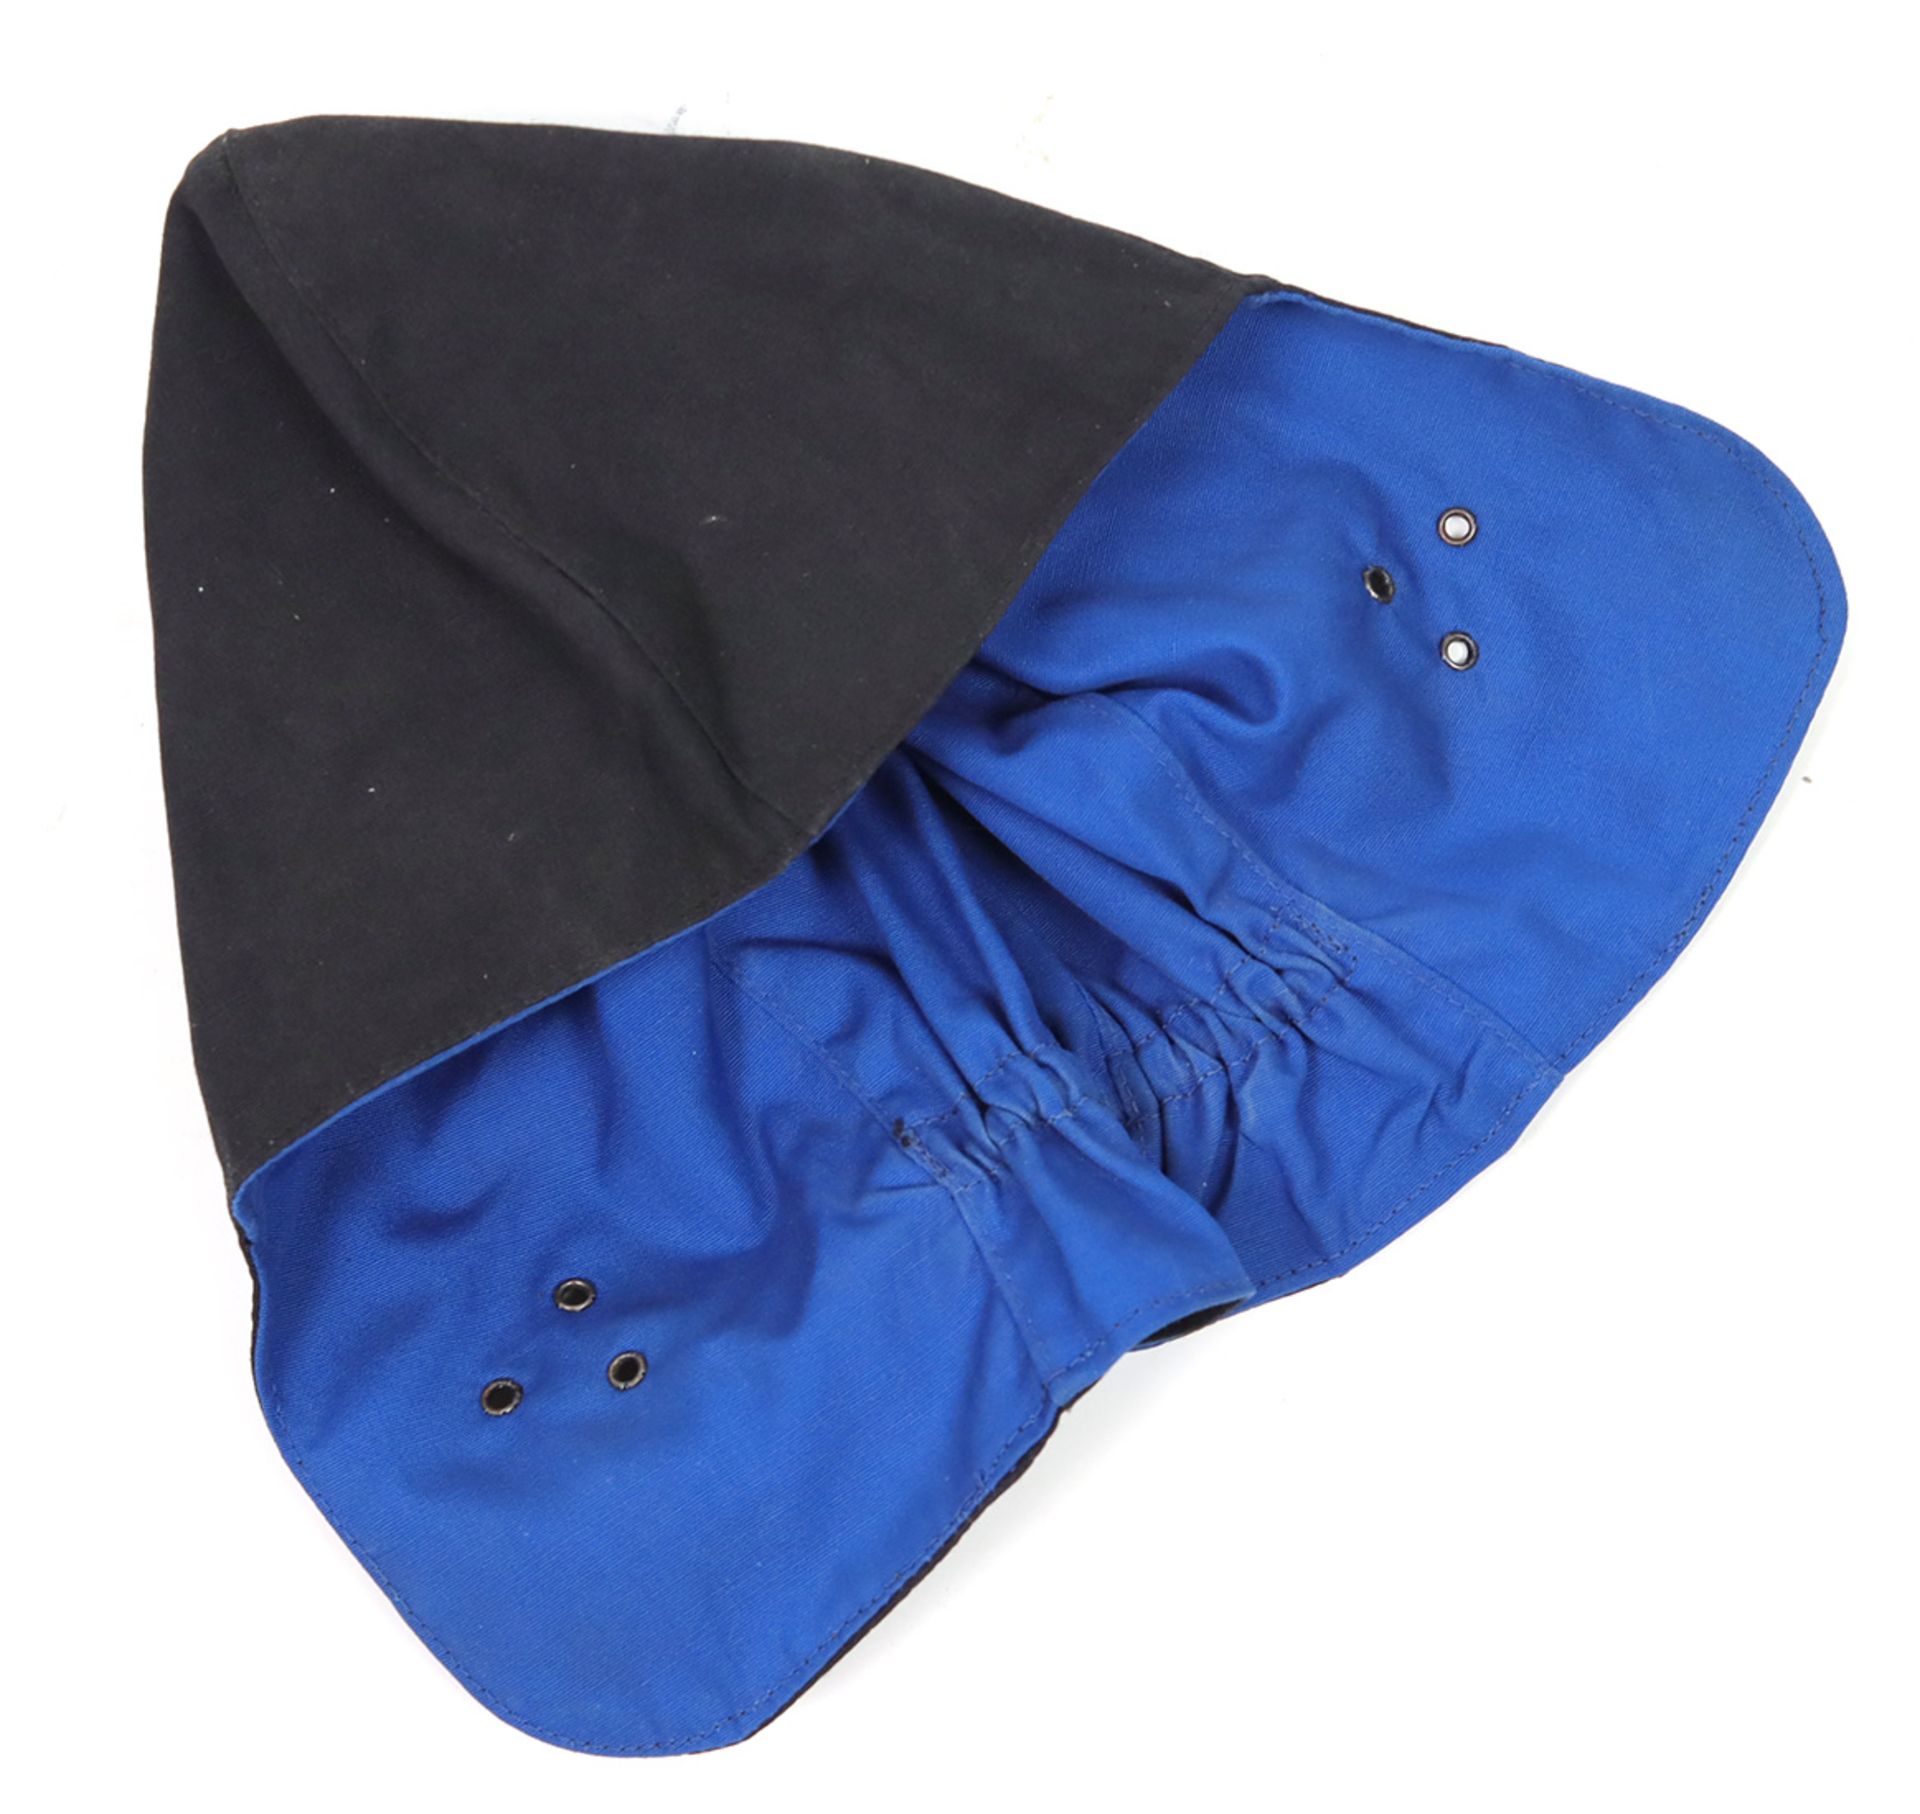 Fahrer Kappeaus schwarz u. blauem Stoff, enganliegende Kappe mit Ohrlöchern u. Gummizug im Nacken, - Image 3 of 3